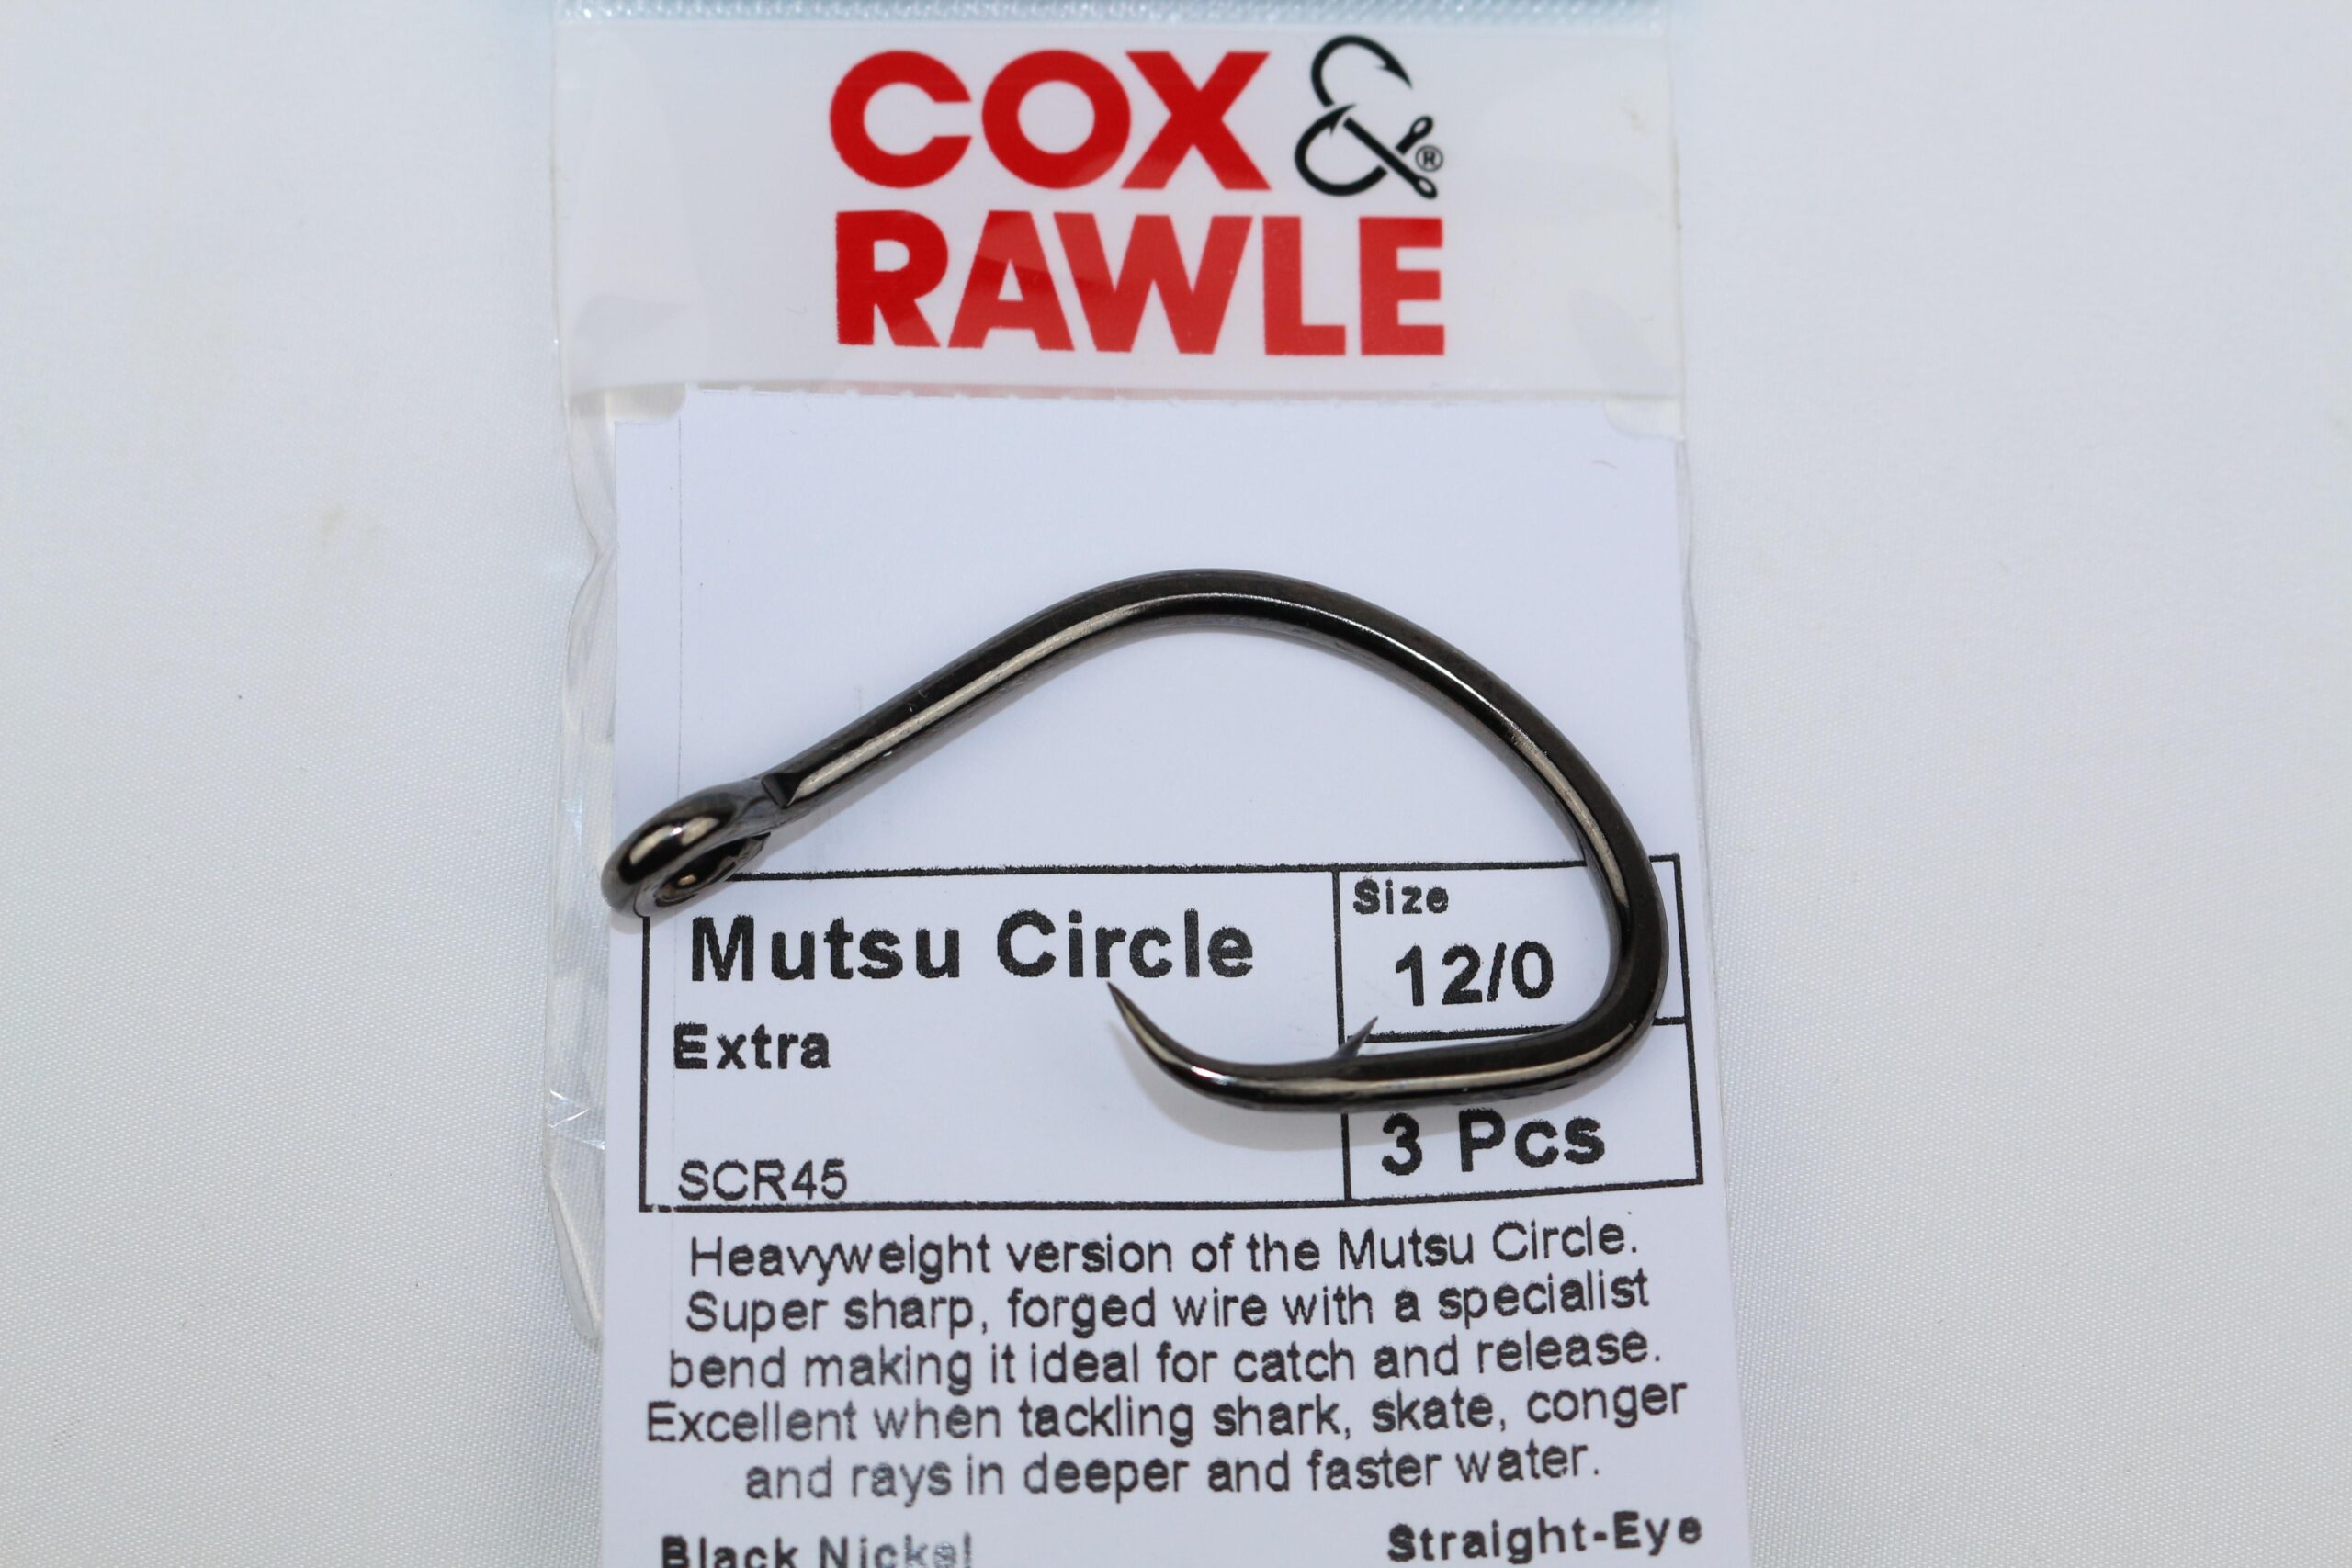 Cox & Rawle Mutsu Circle Hooks Size 12/0